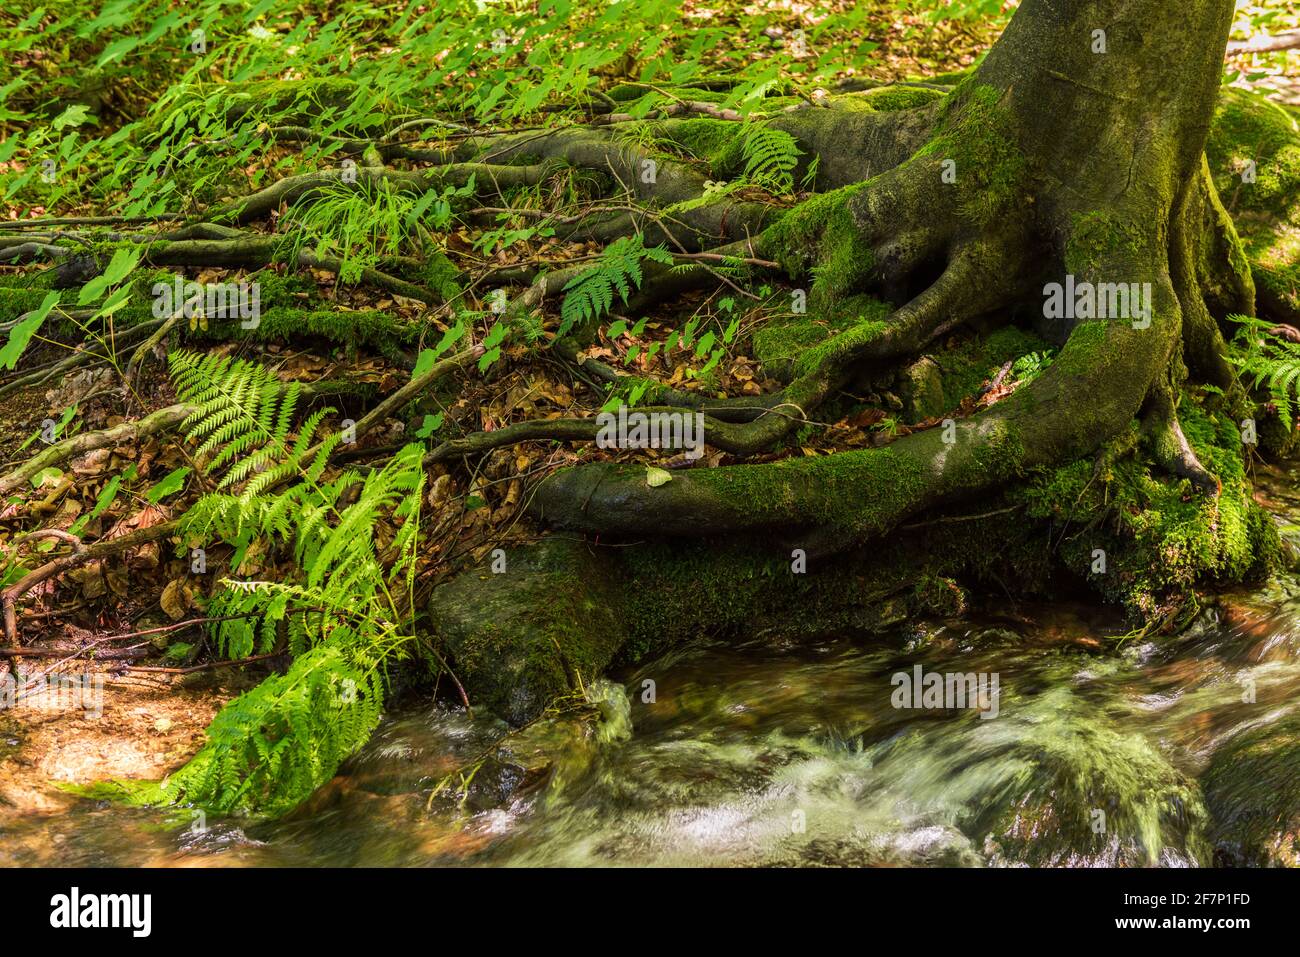 Ruisseau avec racines d'arbre dans une forêt. Paysage avec ruisseau de montagne peu profond dans la forêt, pierres humides dans le lit de rivière et l'eau claire en mouvement, magnifique natur Banque D'Images